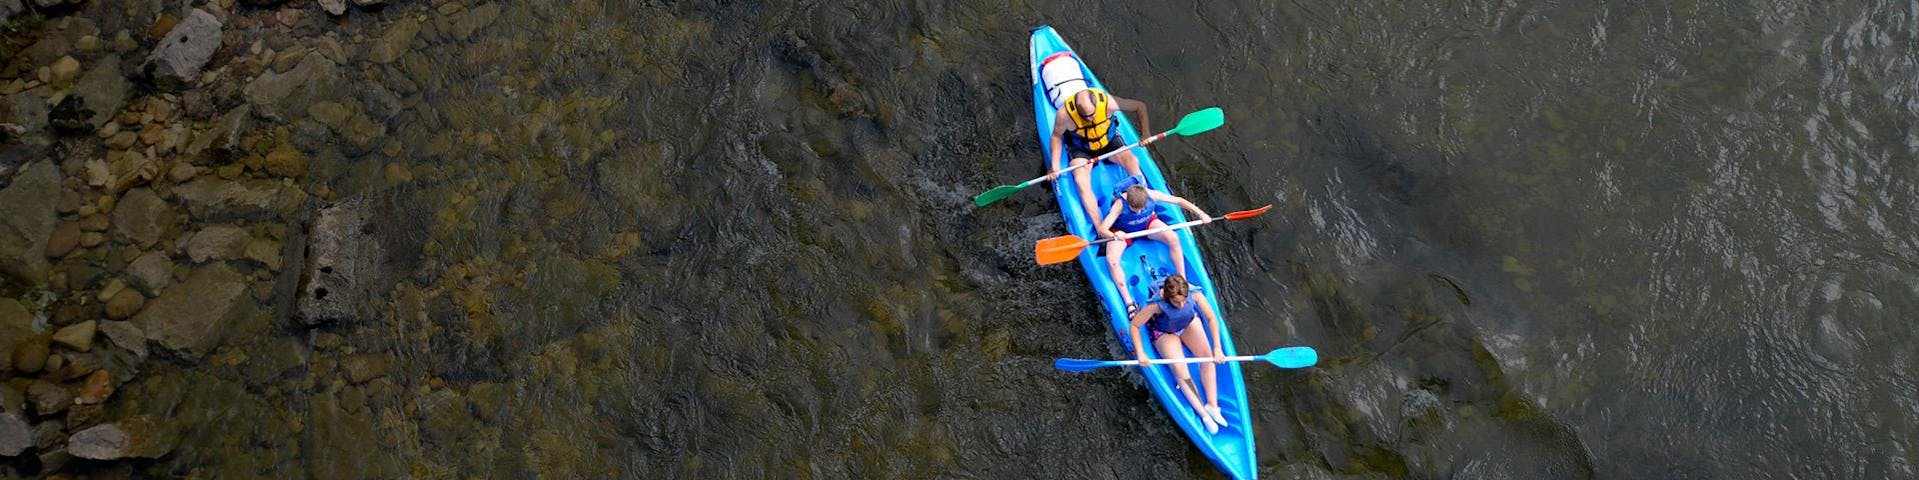 Participantes bajando en canoa el Descenso del Sella en una actividad ofrecida por Rana Sella Arriondas.